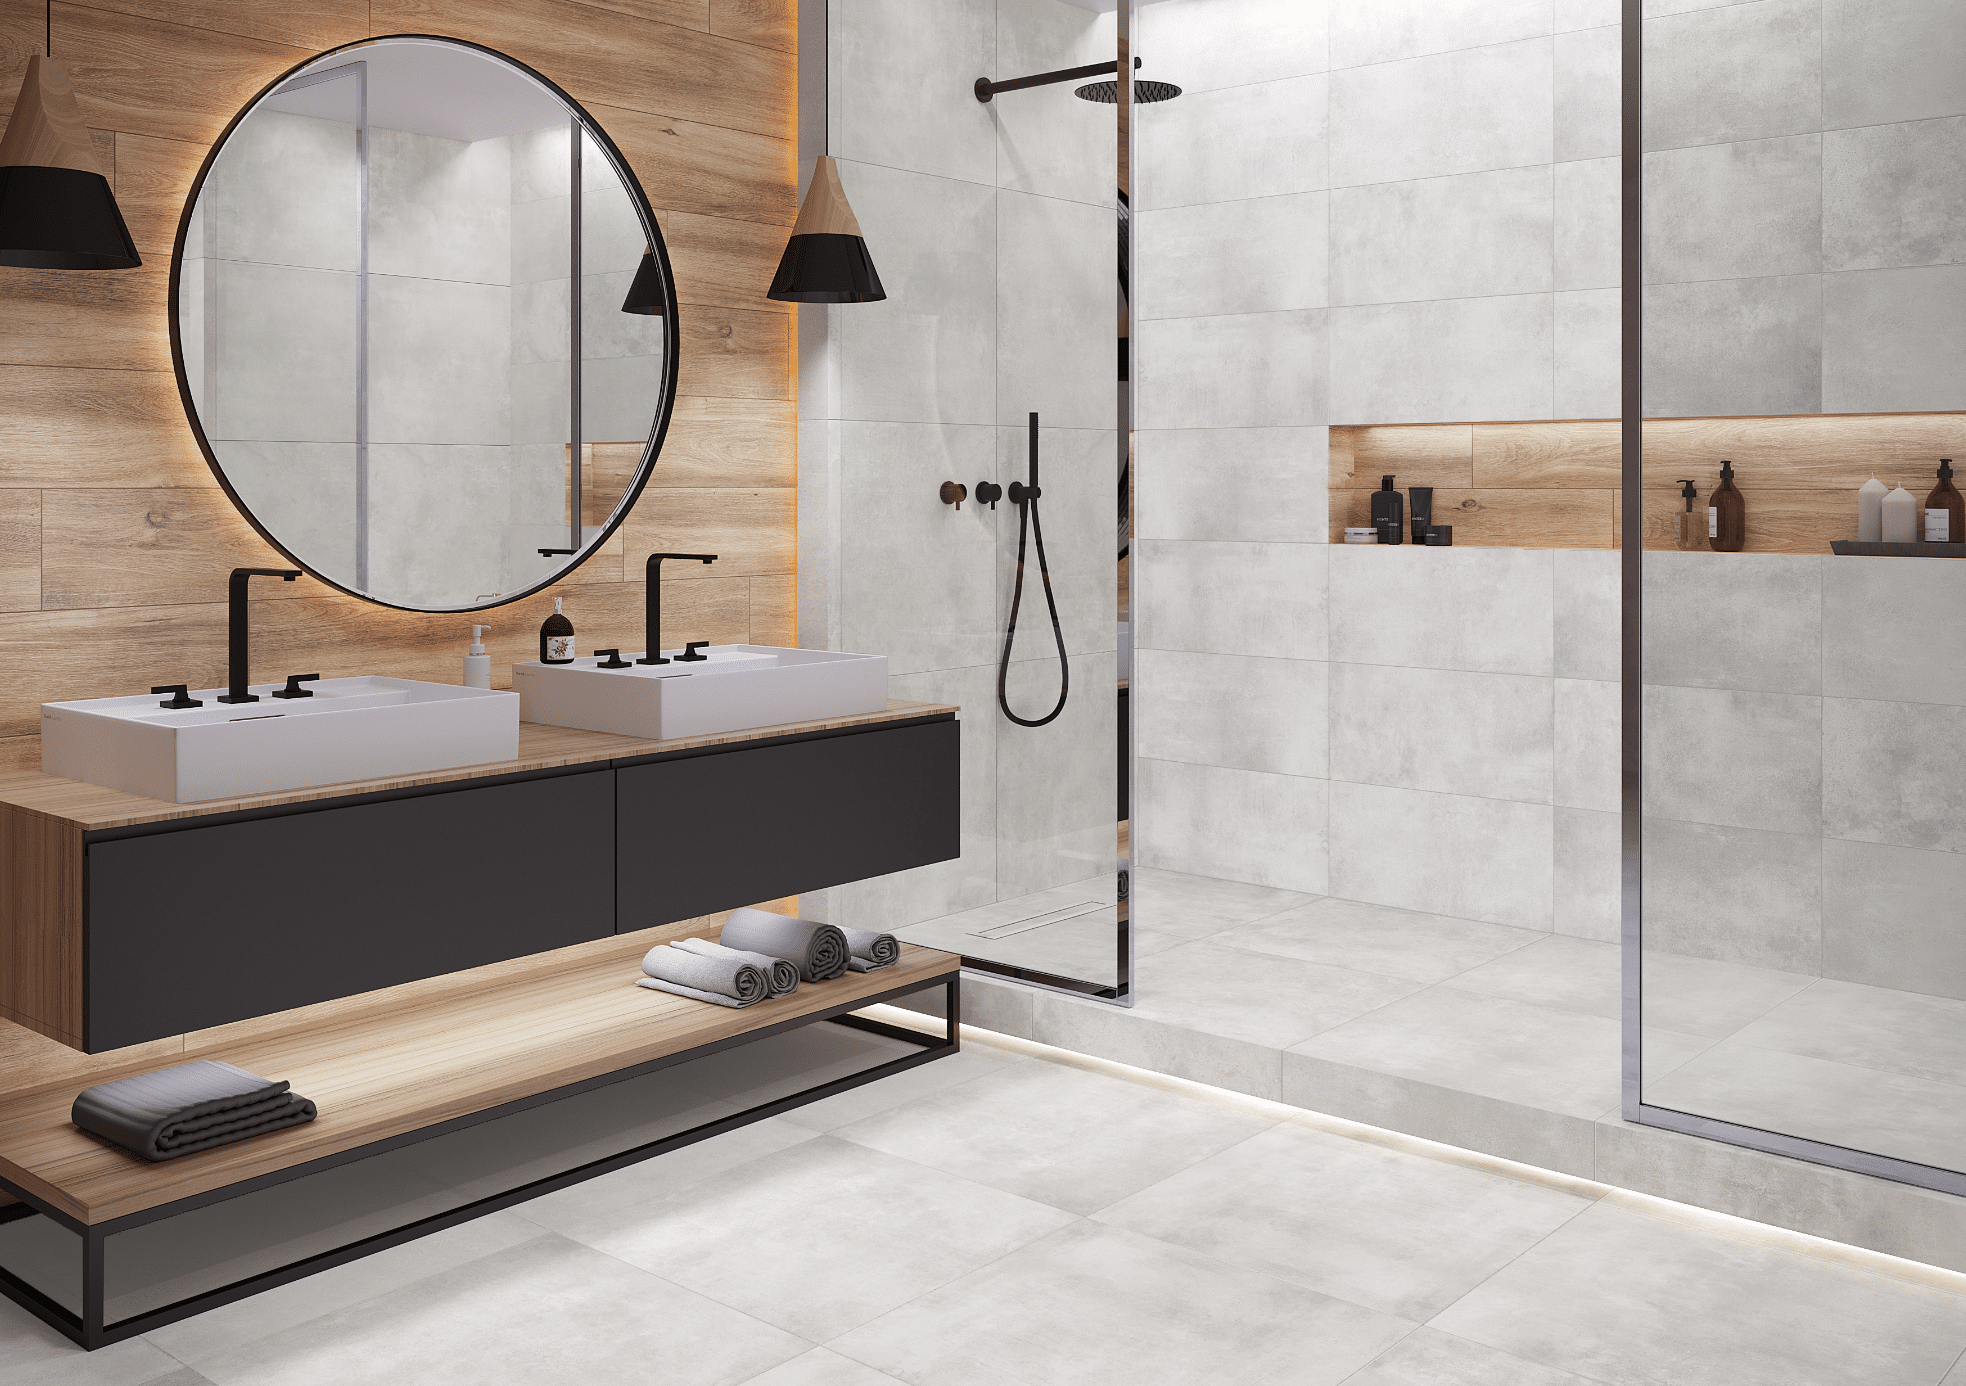 C. Bergmann zeigt ein grau gefliestes Badezimmer mit offener Dusche, zwei weissen Waschtischen und einen großen runden Spiegel von Cerrad.